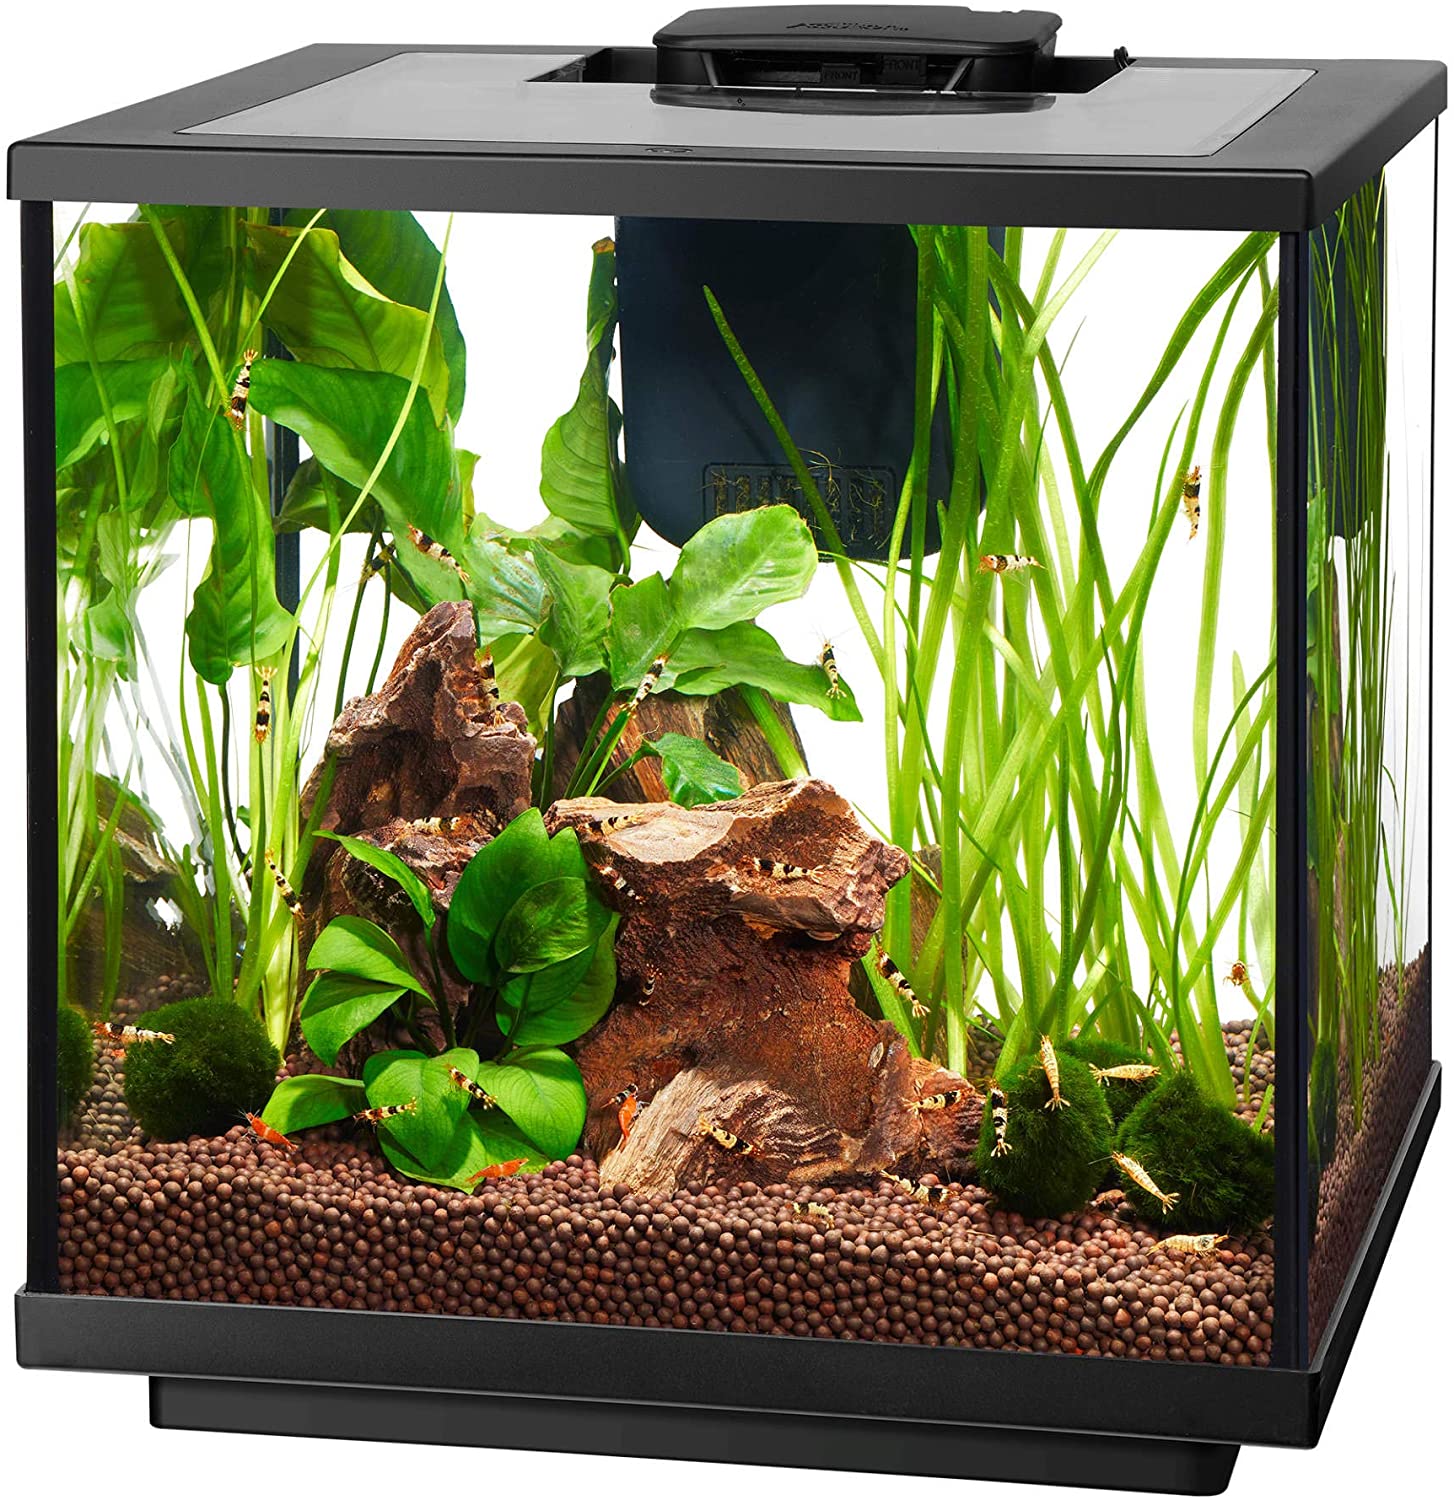 Aqueon 7.5 Gallon LED Shrimp Aquarium Kit